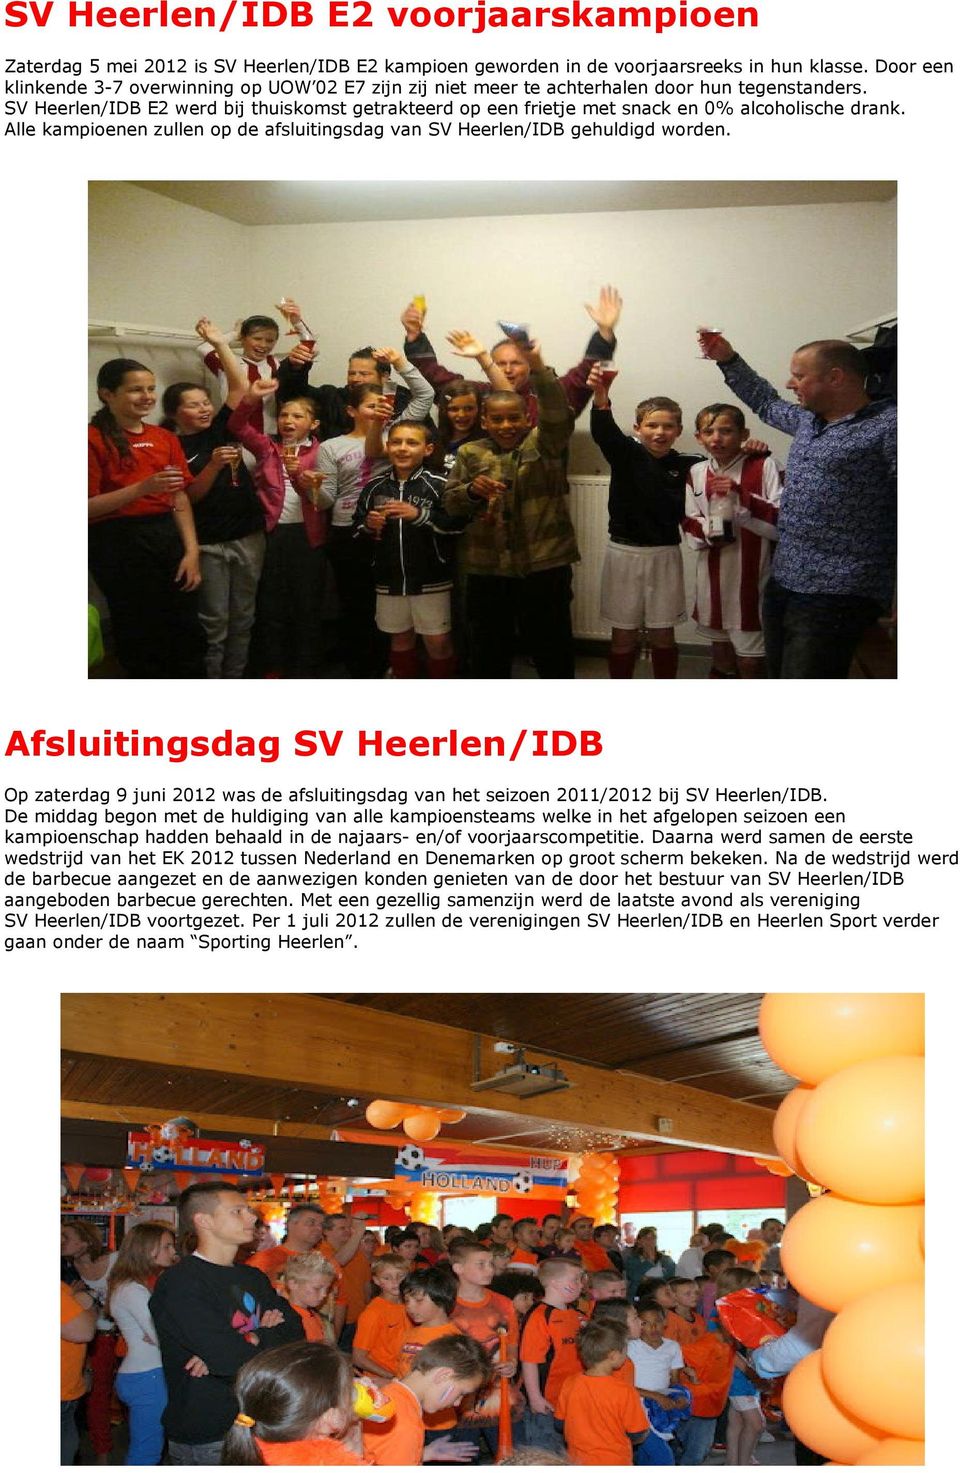 SV Heerlen/IDB E2 werd bij thuiskomst getrakteerd op een frietje met snack en 0% alcoholische drank. Alle kampioenen zullen op de afsluitingsdag van SV Heerlen/IDB gehuldigd worden.